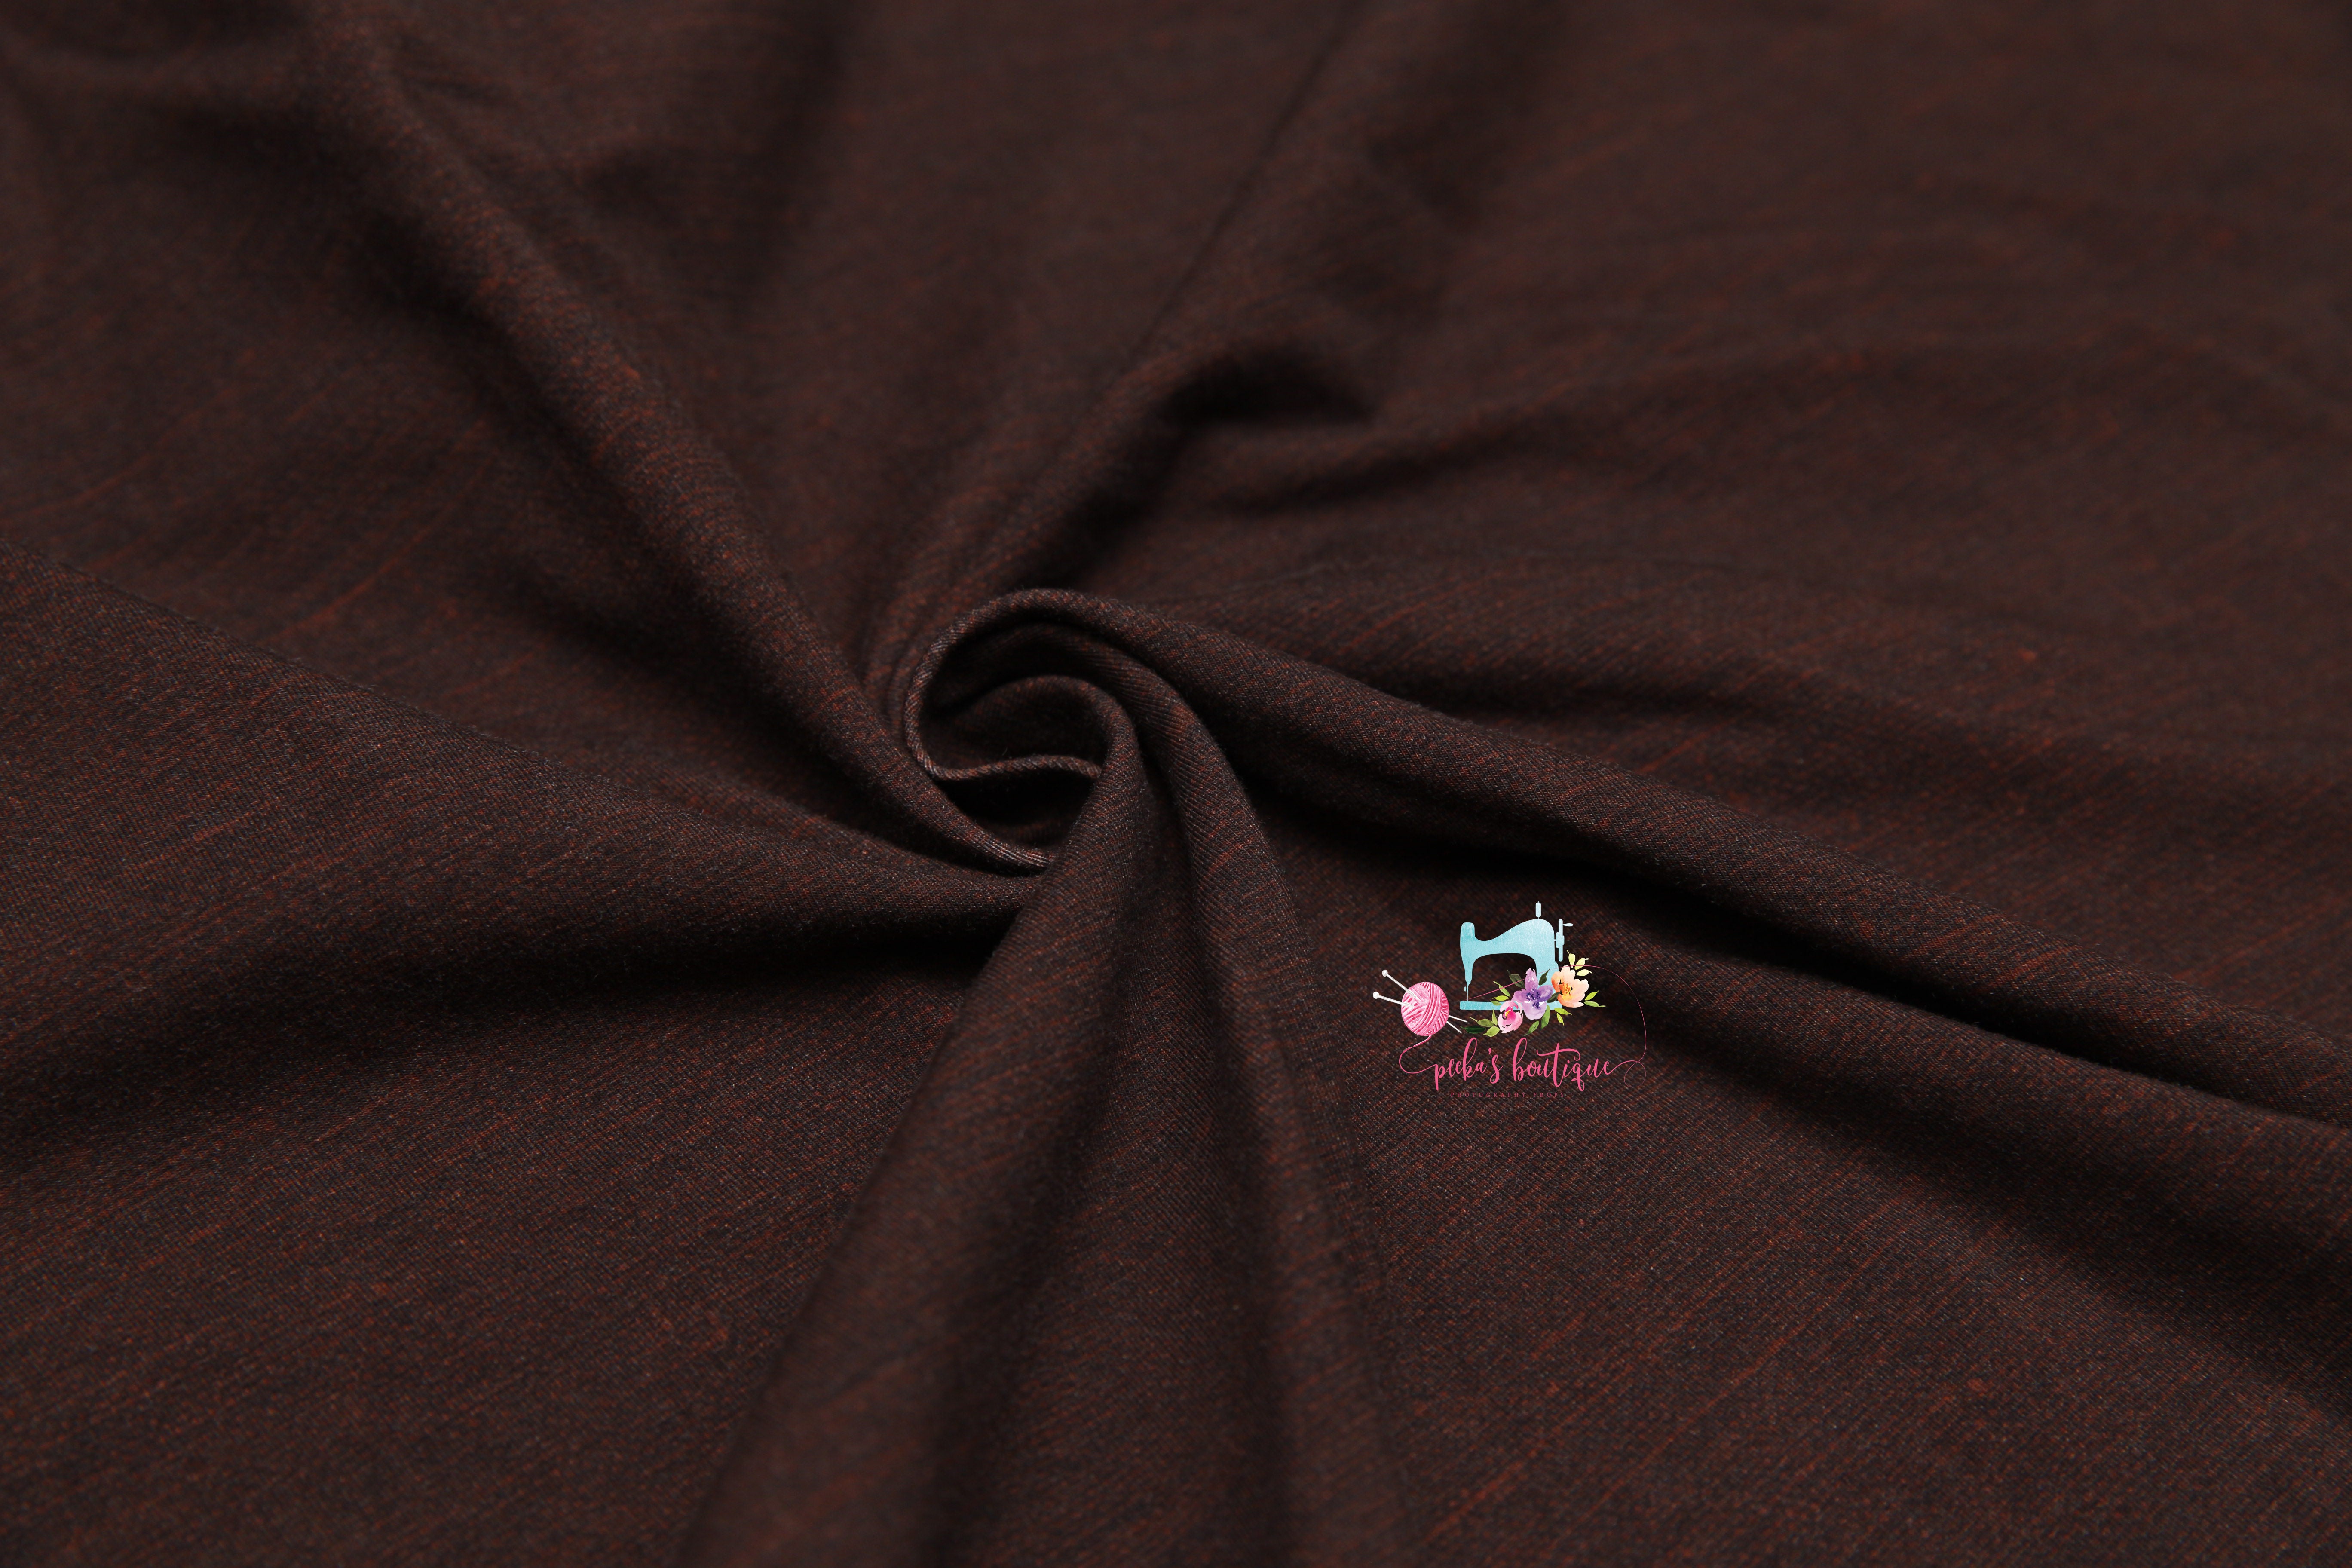 Newborn or Sitter Linen Suspenders- MADE TO ORDER- Dark Brown